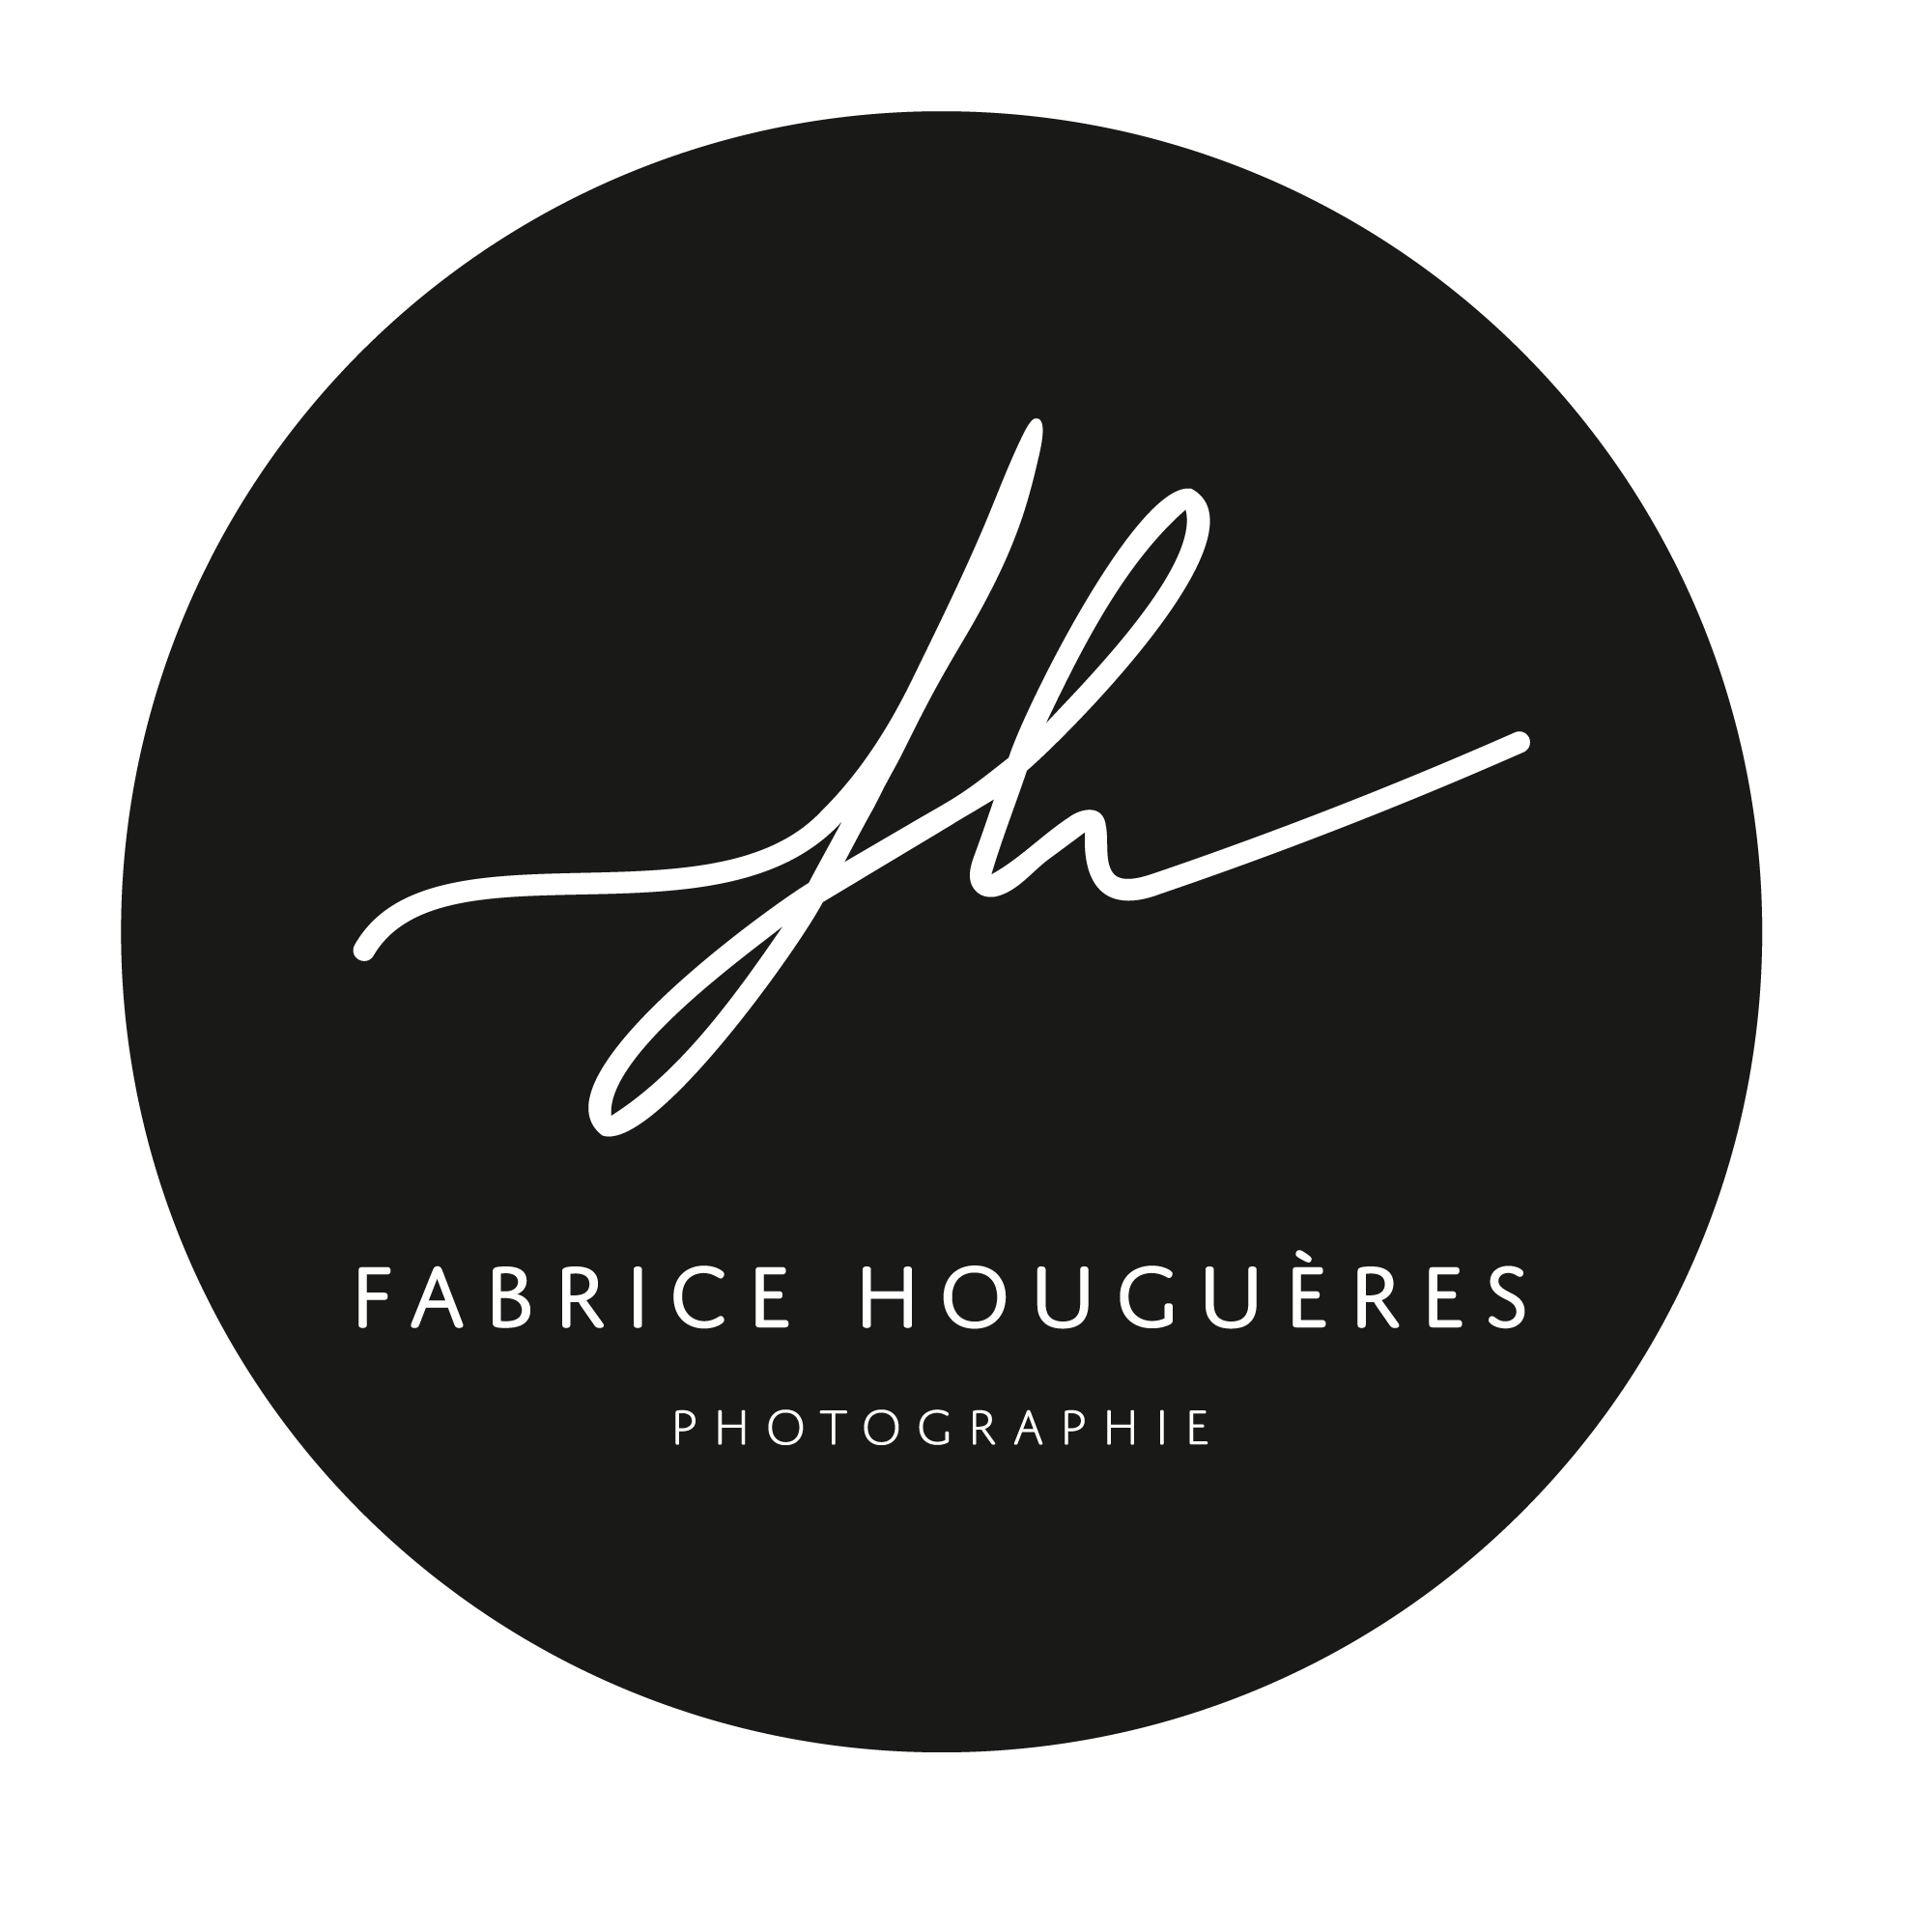 Logo de Fabrice HOUGUERES photographe de mariage. Le logo est rond sur un fond noir. FH est ecrit dessus